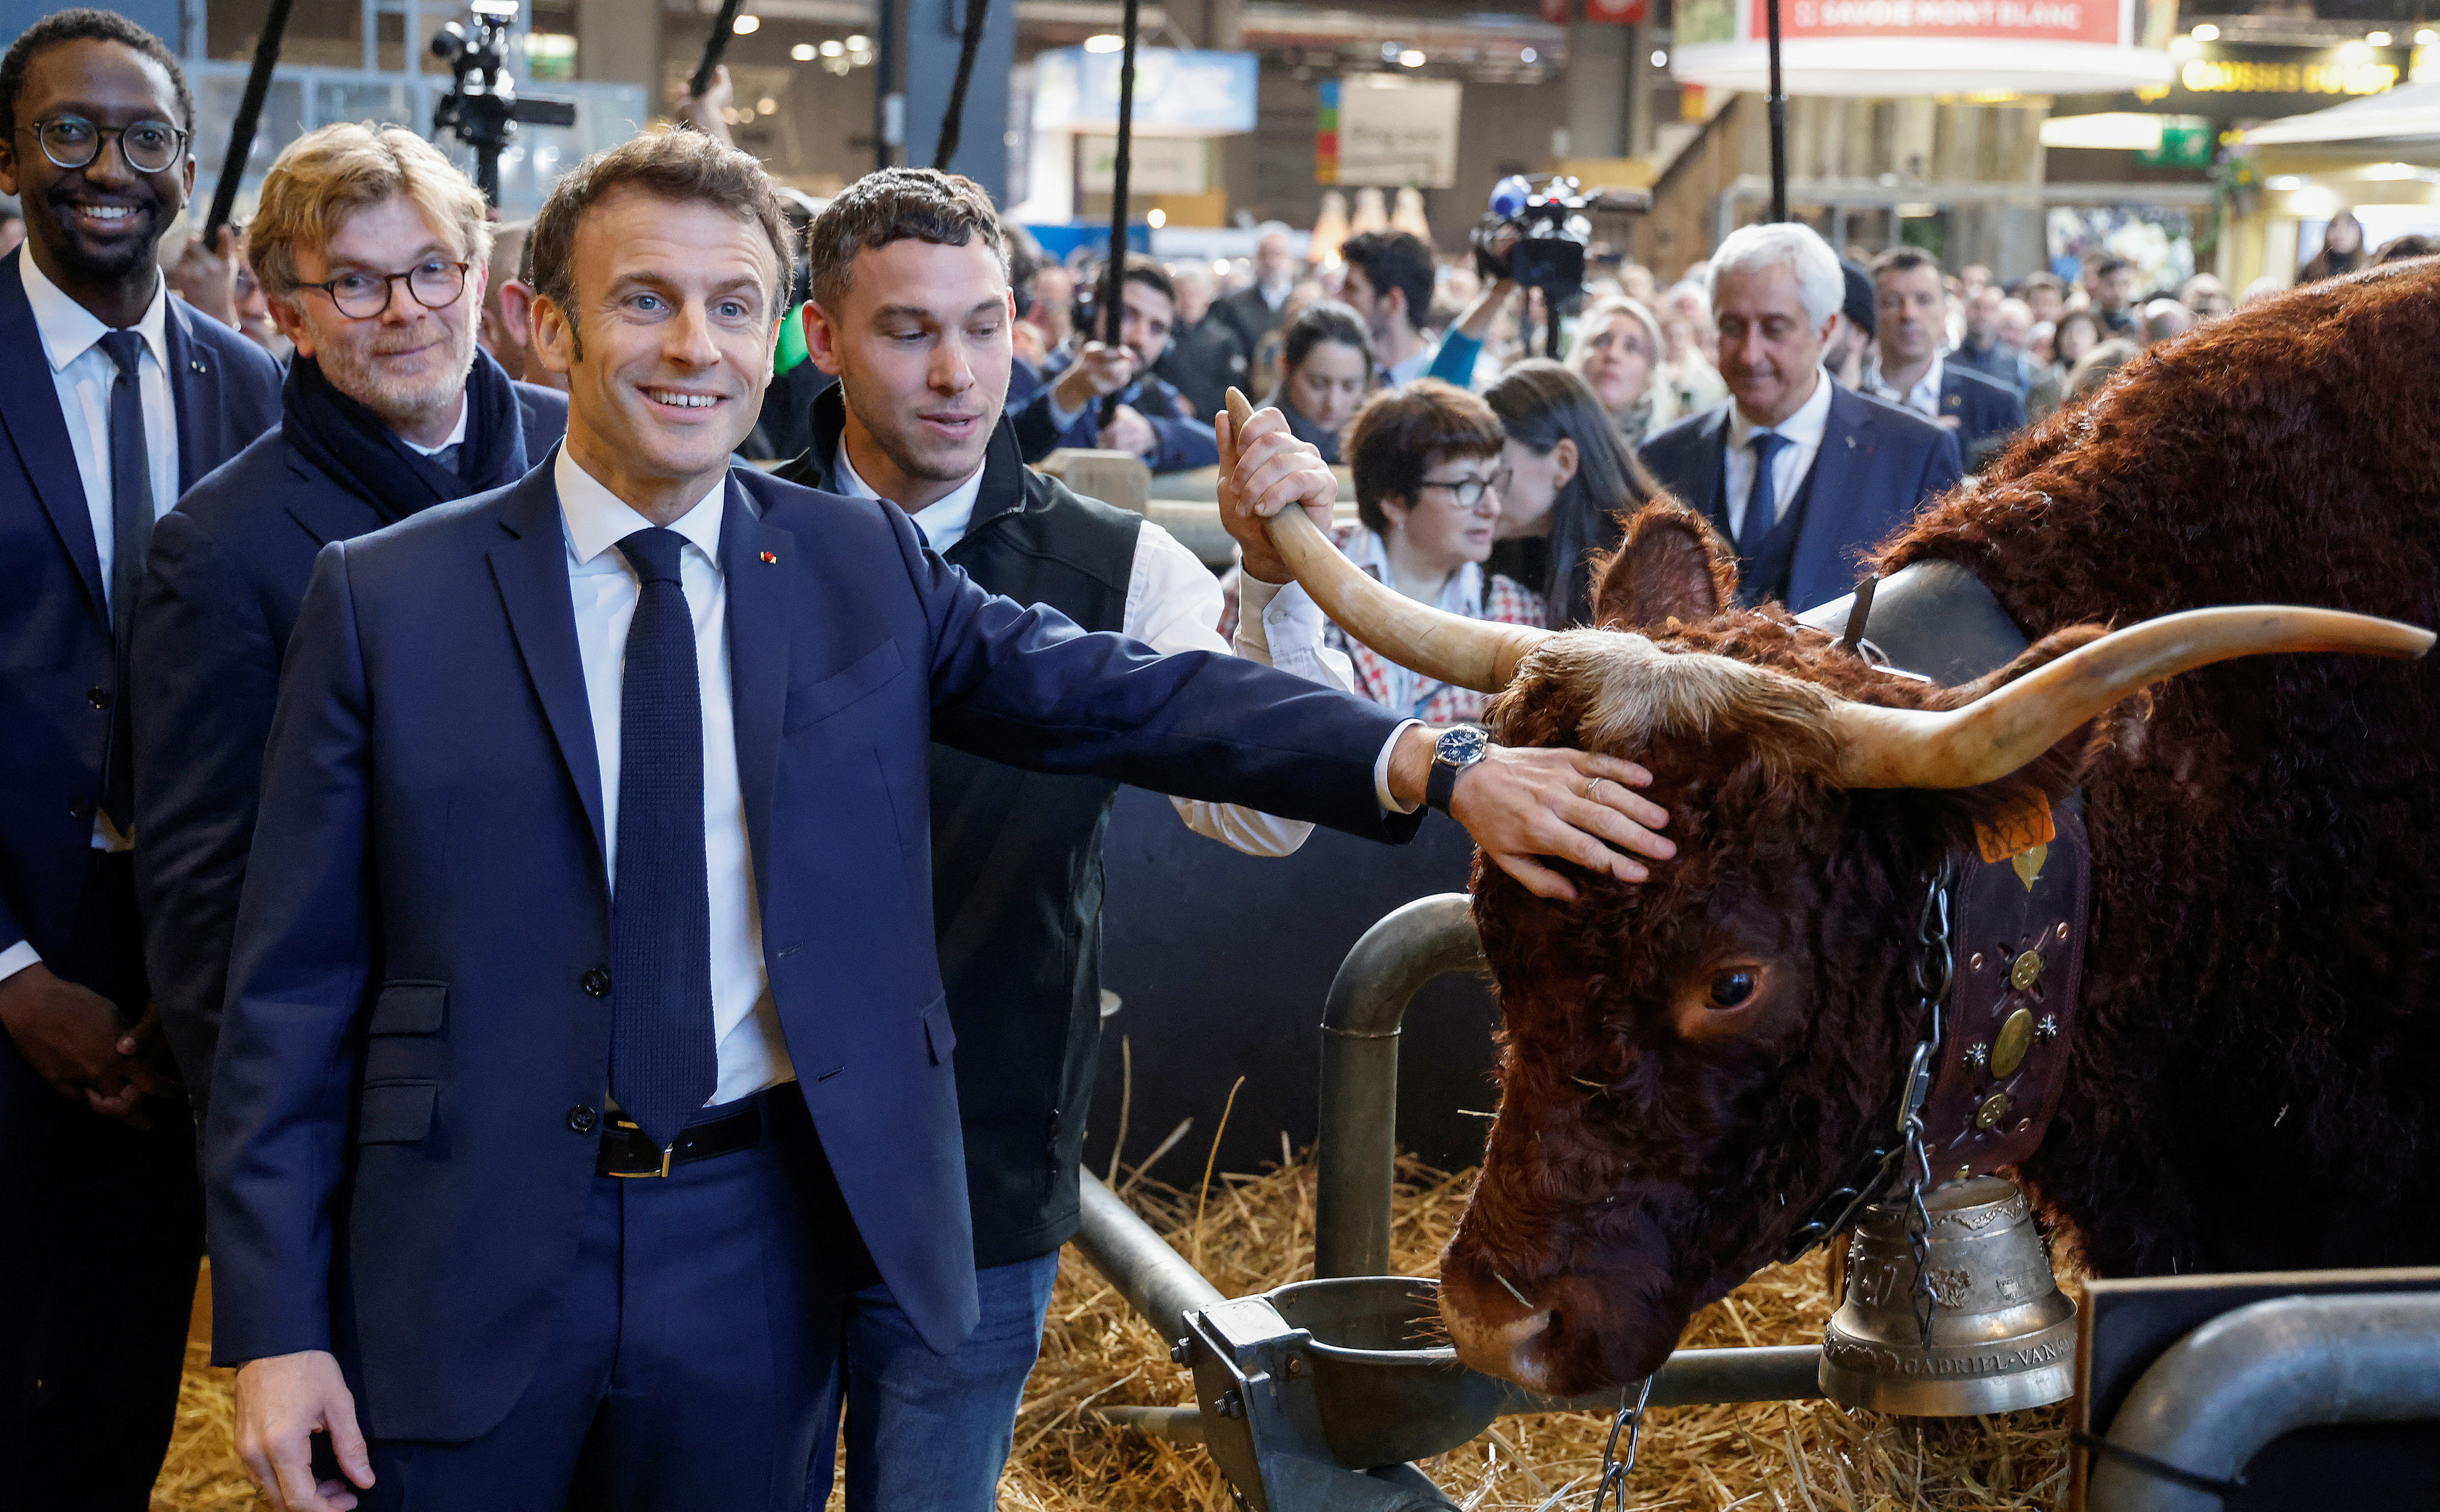 Macron habló del acuerdo UE-Mercosur en su visita a la gran feria nacional de la agricultura (Ludovic Marin/Pool via REUTERS)